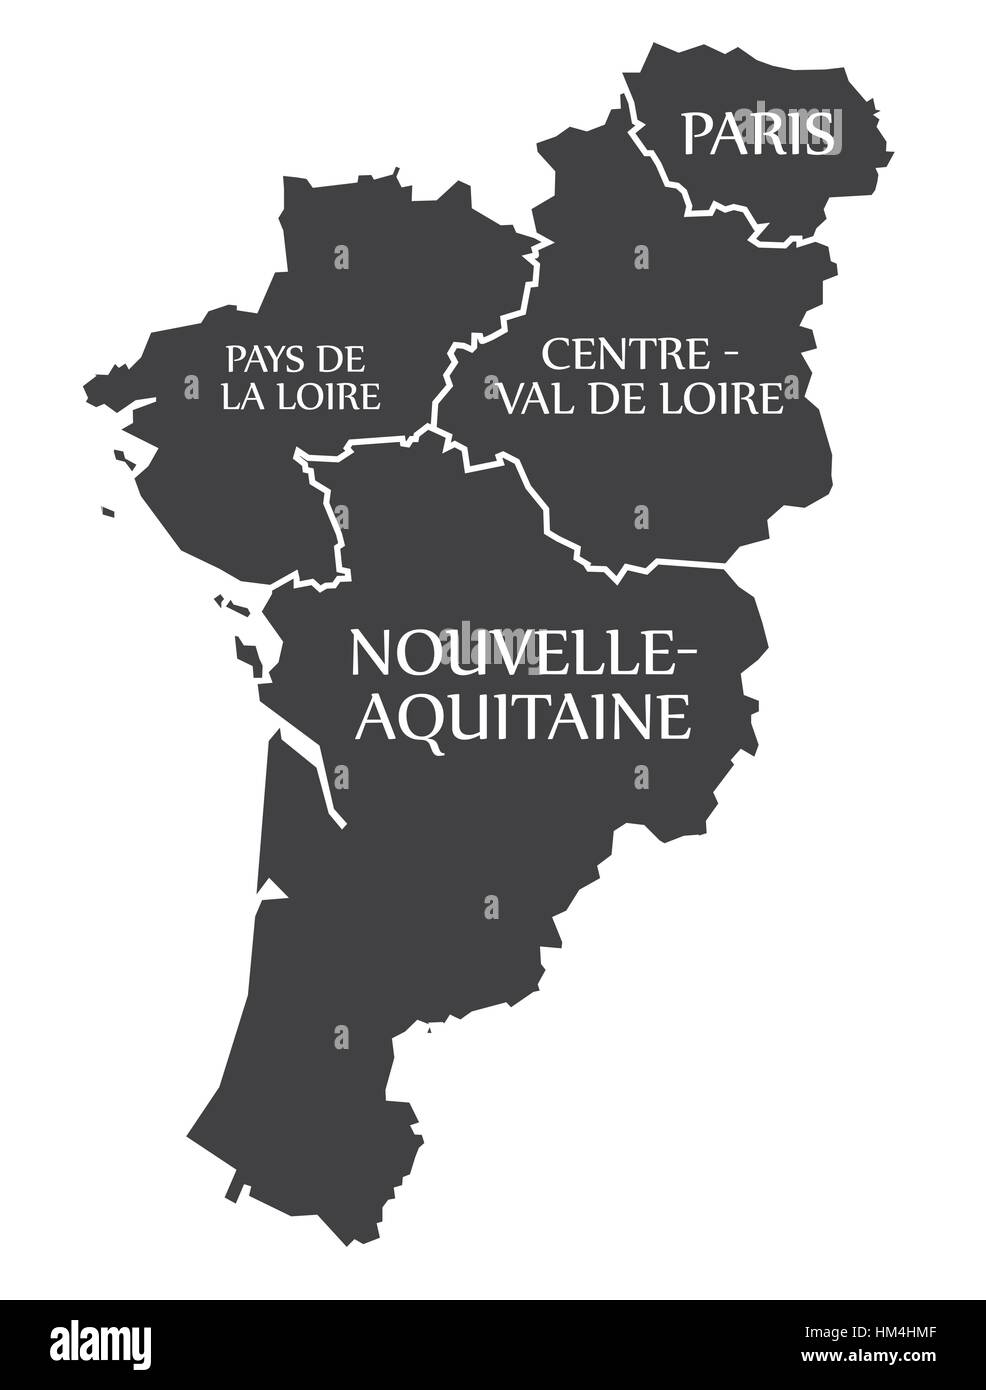 Pays de la loire - Paris - Centre - Val de Loire - Nouvelle - Aquitaine Map France illustration Stock Vector